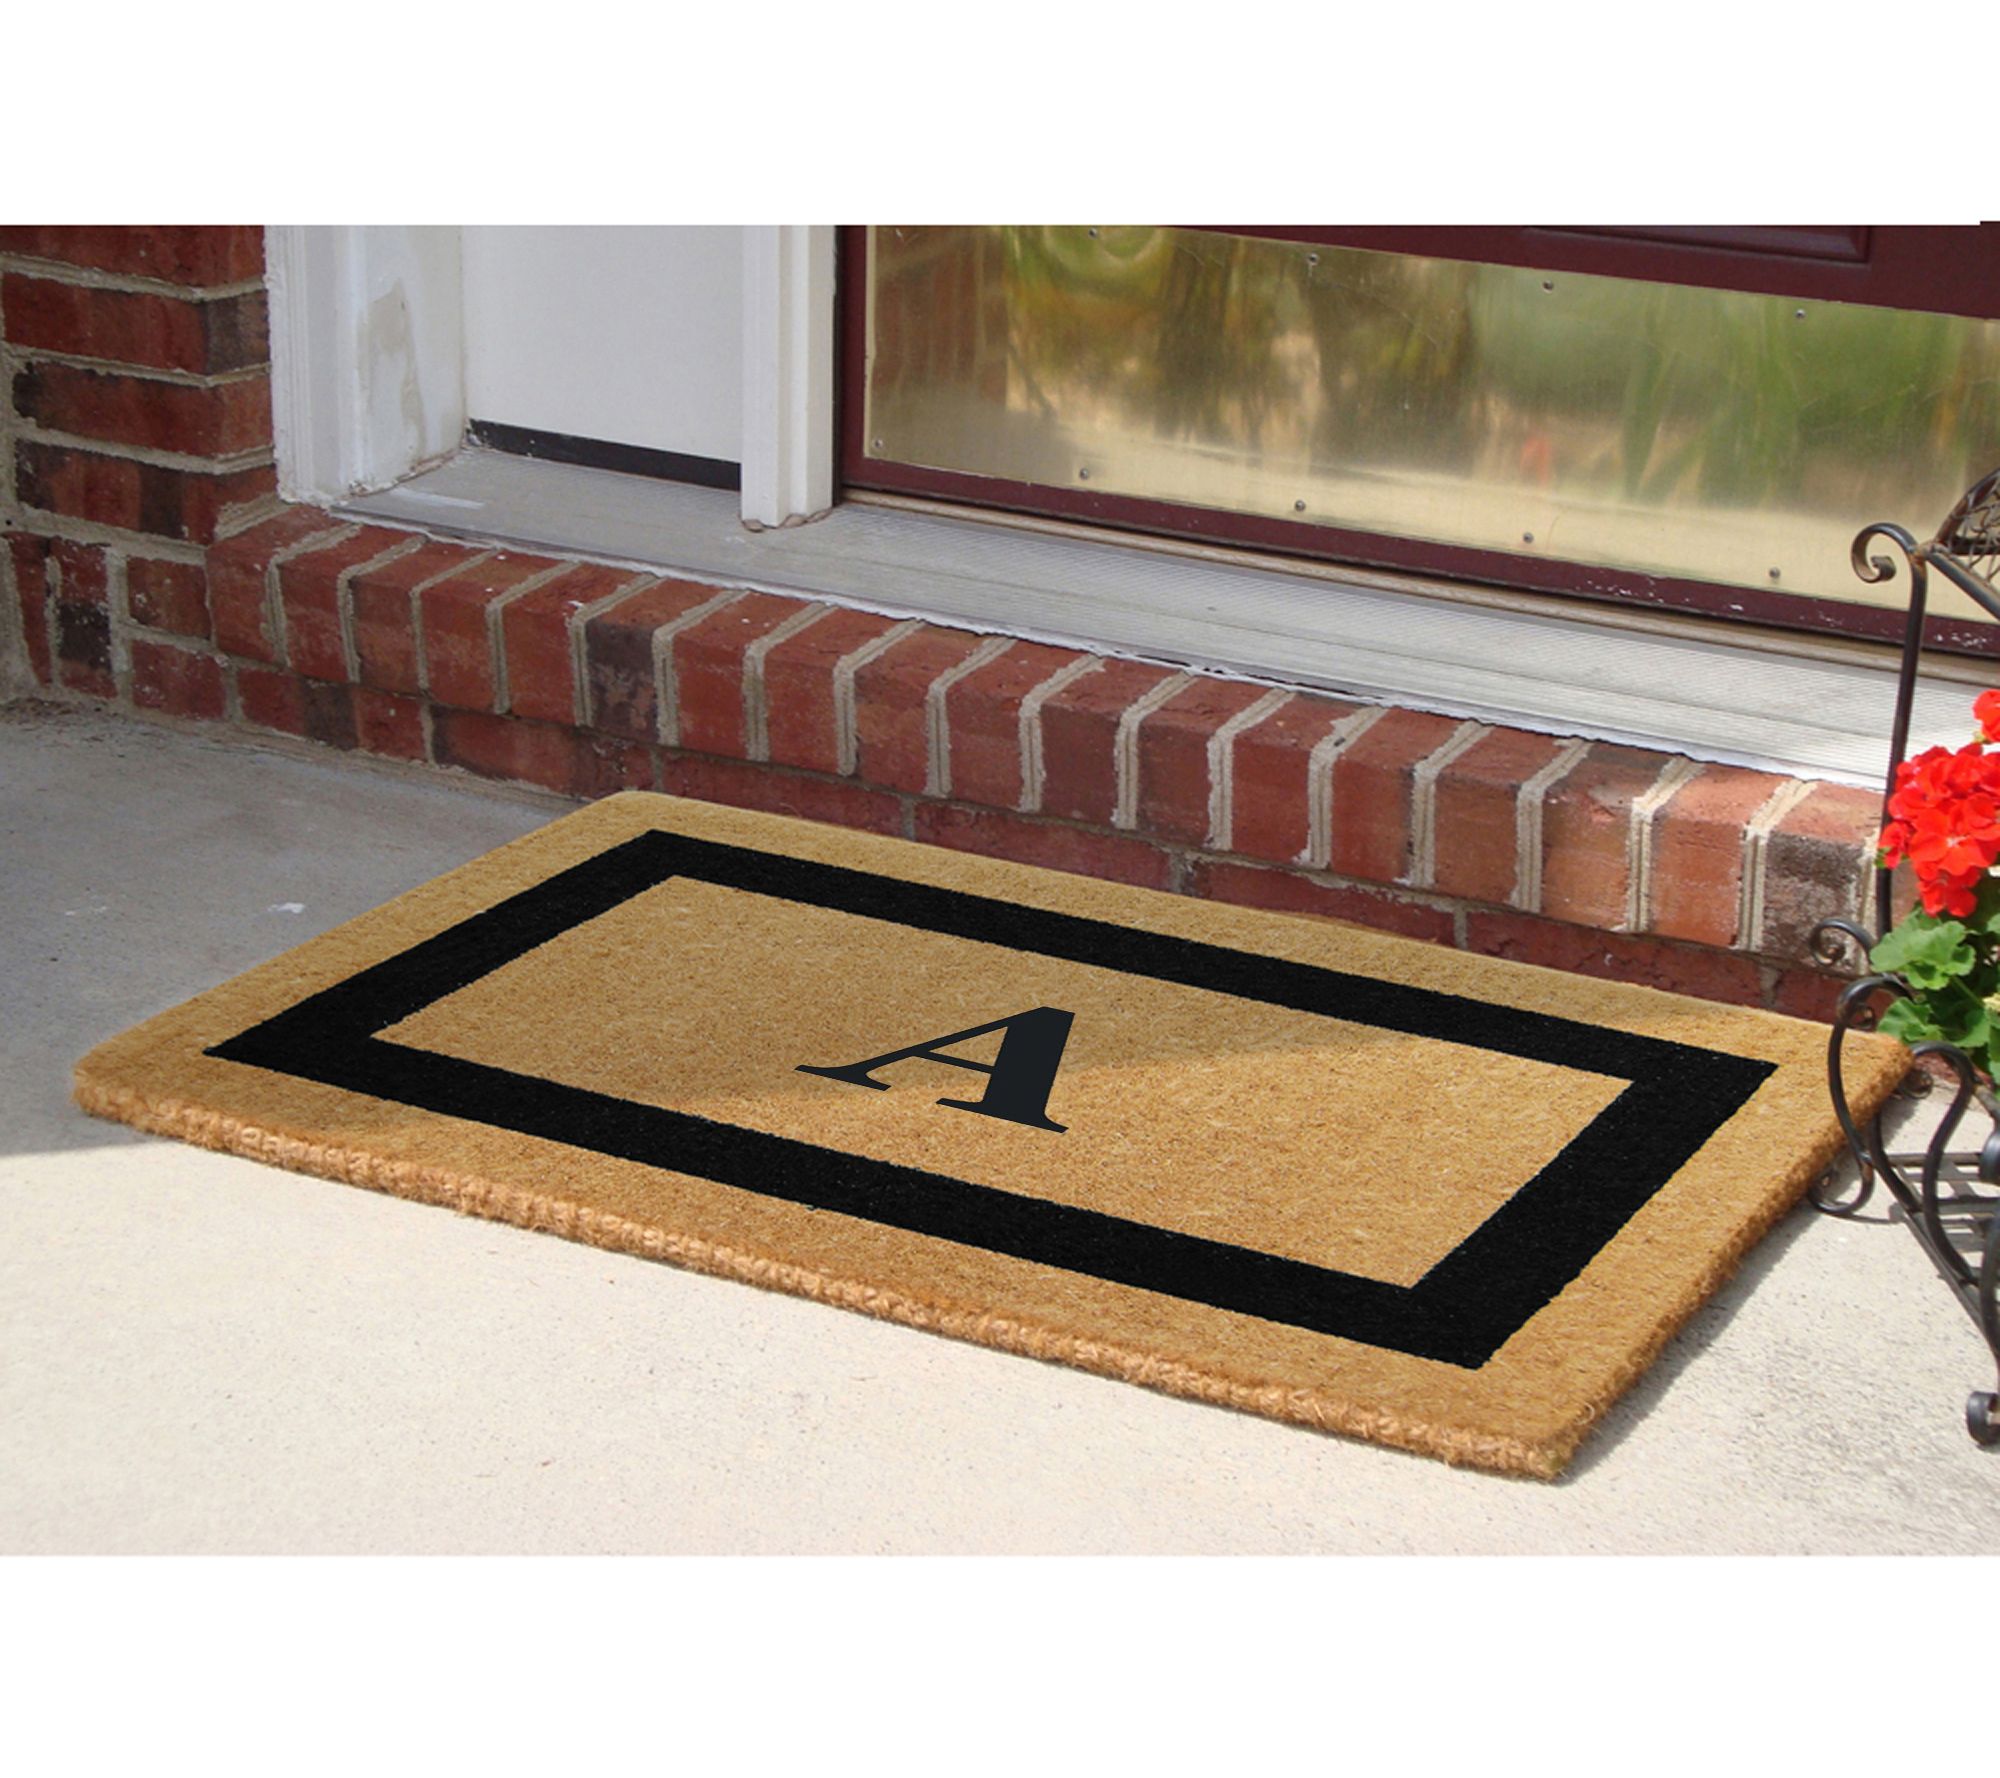 Natural Coco Coir Doormat 22 x 36 in 1" Thick Low Brown plain outdoor floor mat 